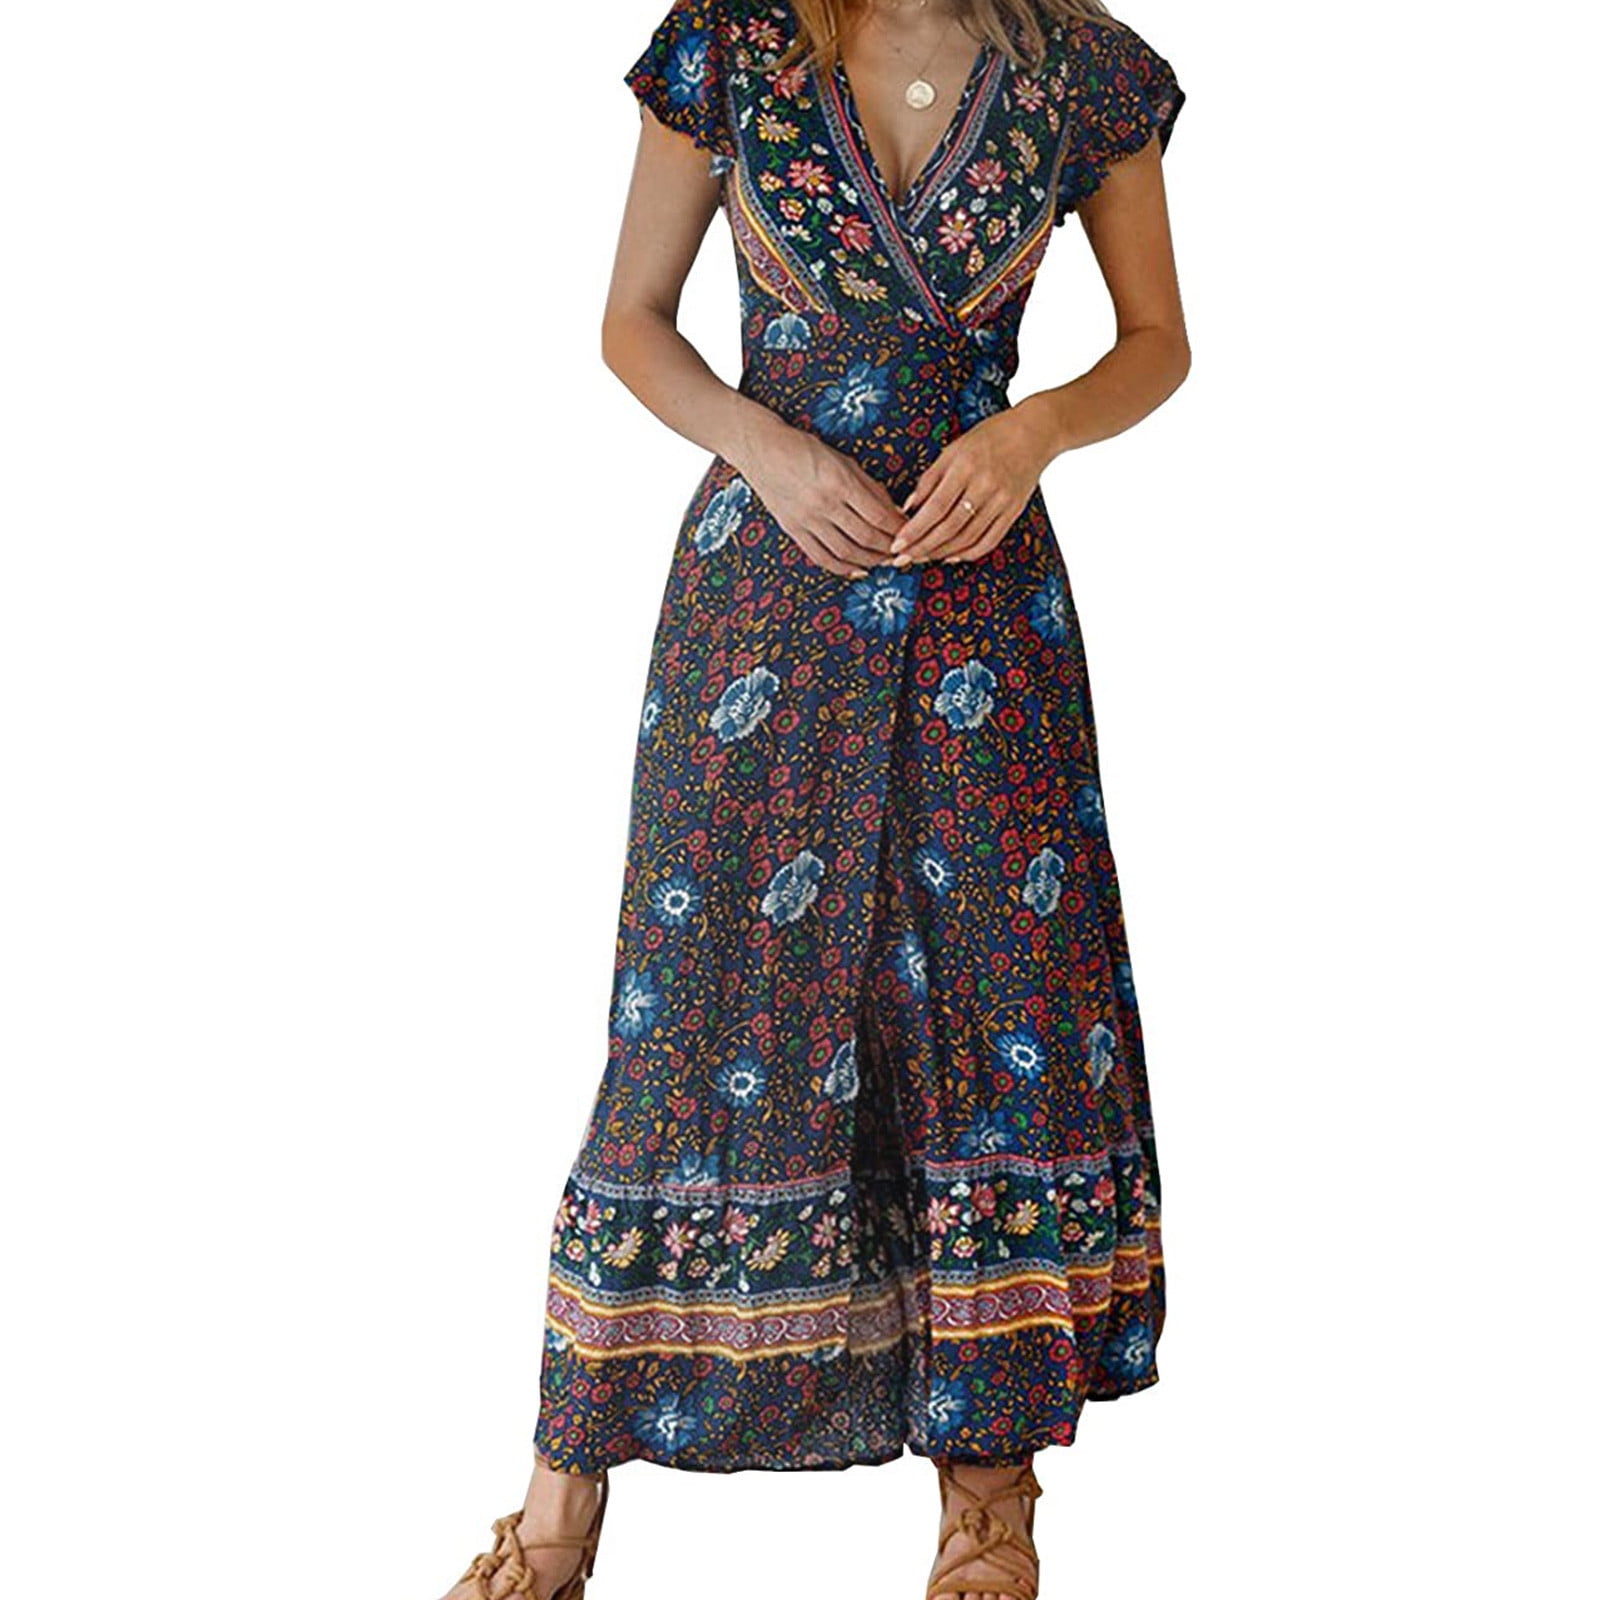 Oxodoi Sales Clearance Women's Boho Button Up Split Floral Print Flowy  Party Dress Blue Party Dresses for Women - Walmart.com